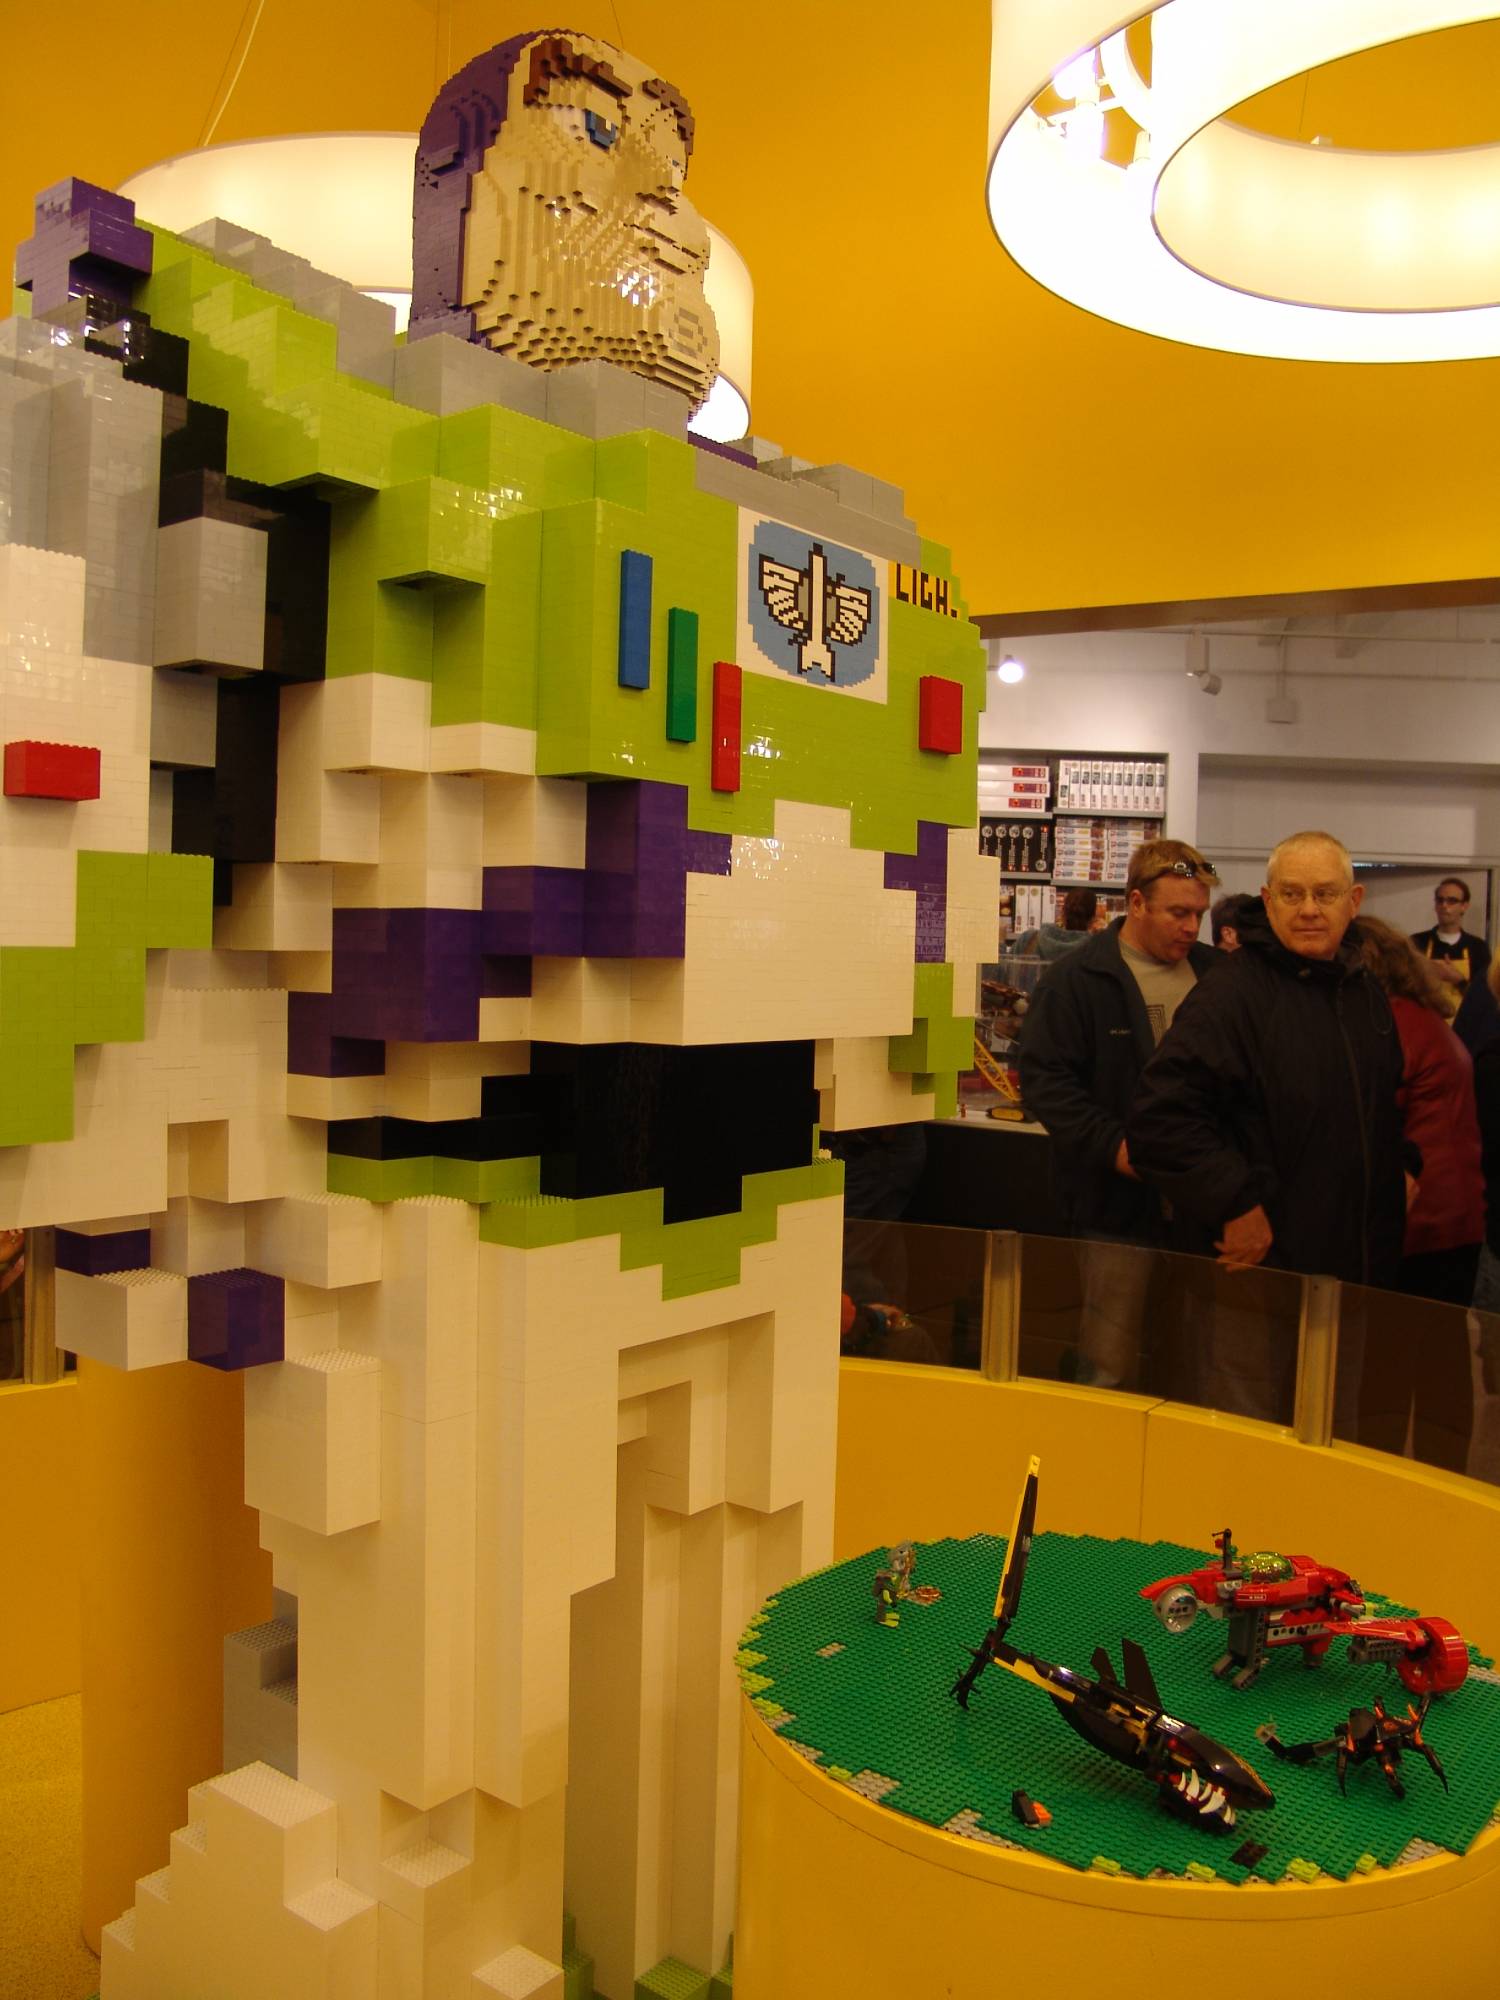 Downtown Disney - Lego store